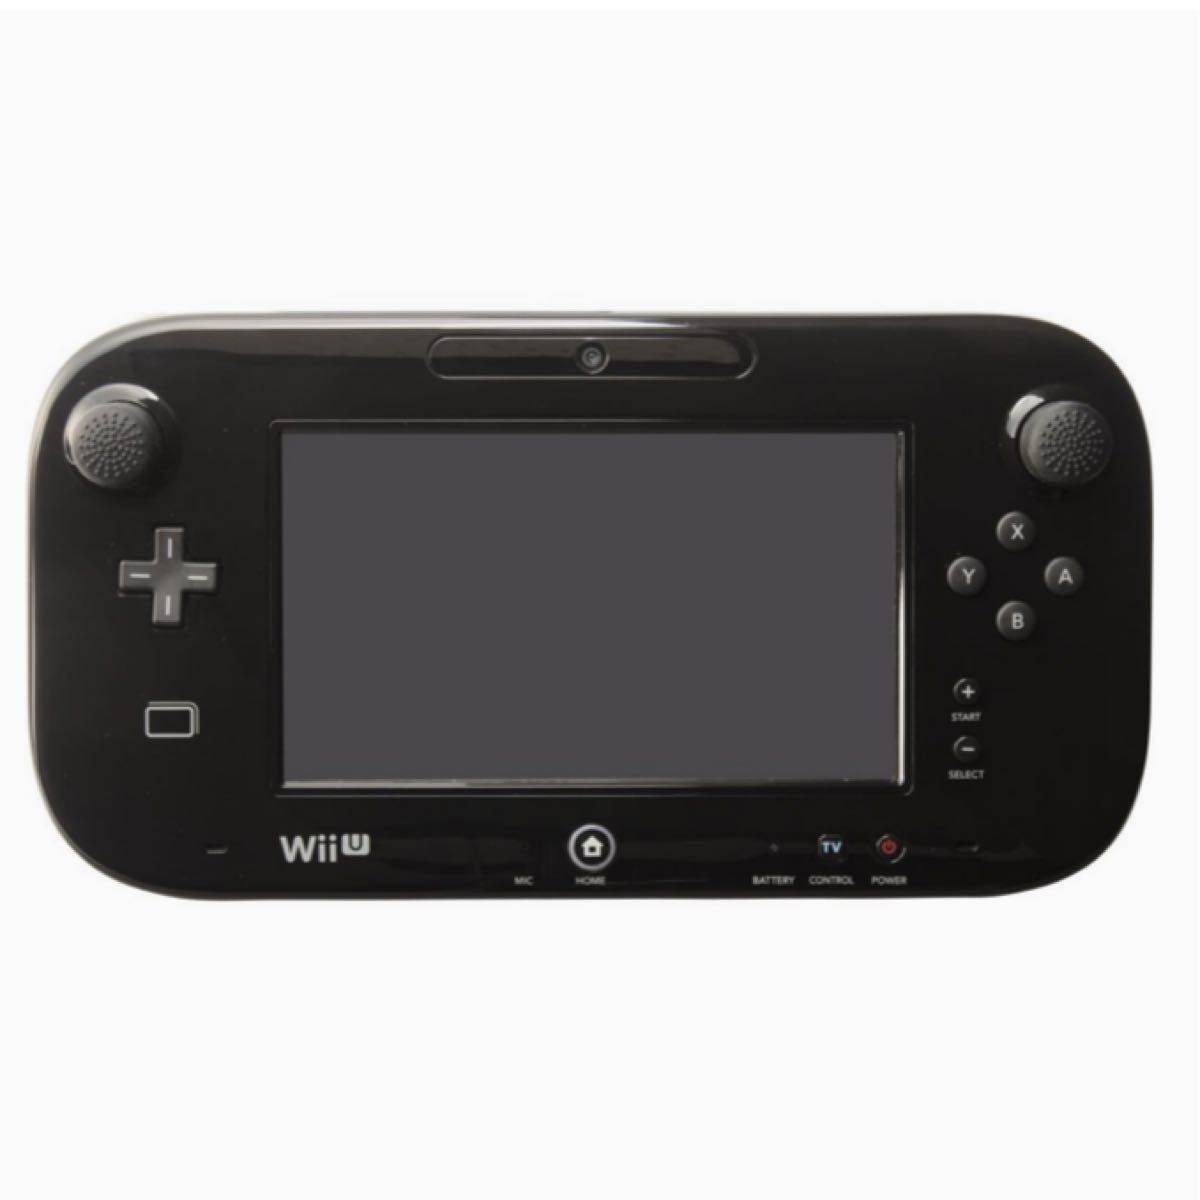 アナログスティックカバー HIGHタイプ ( Wii U GamePad 用) ブラック 【Wii U PROコントローラー対応】